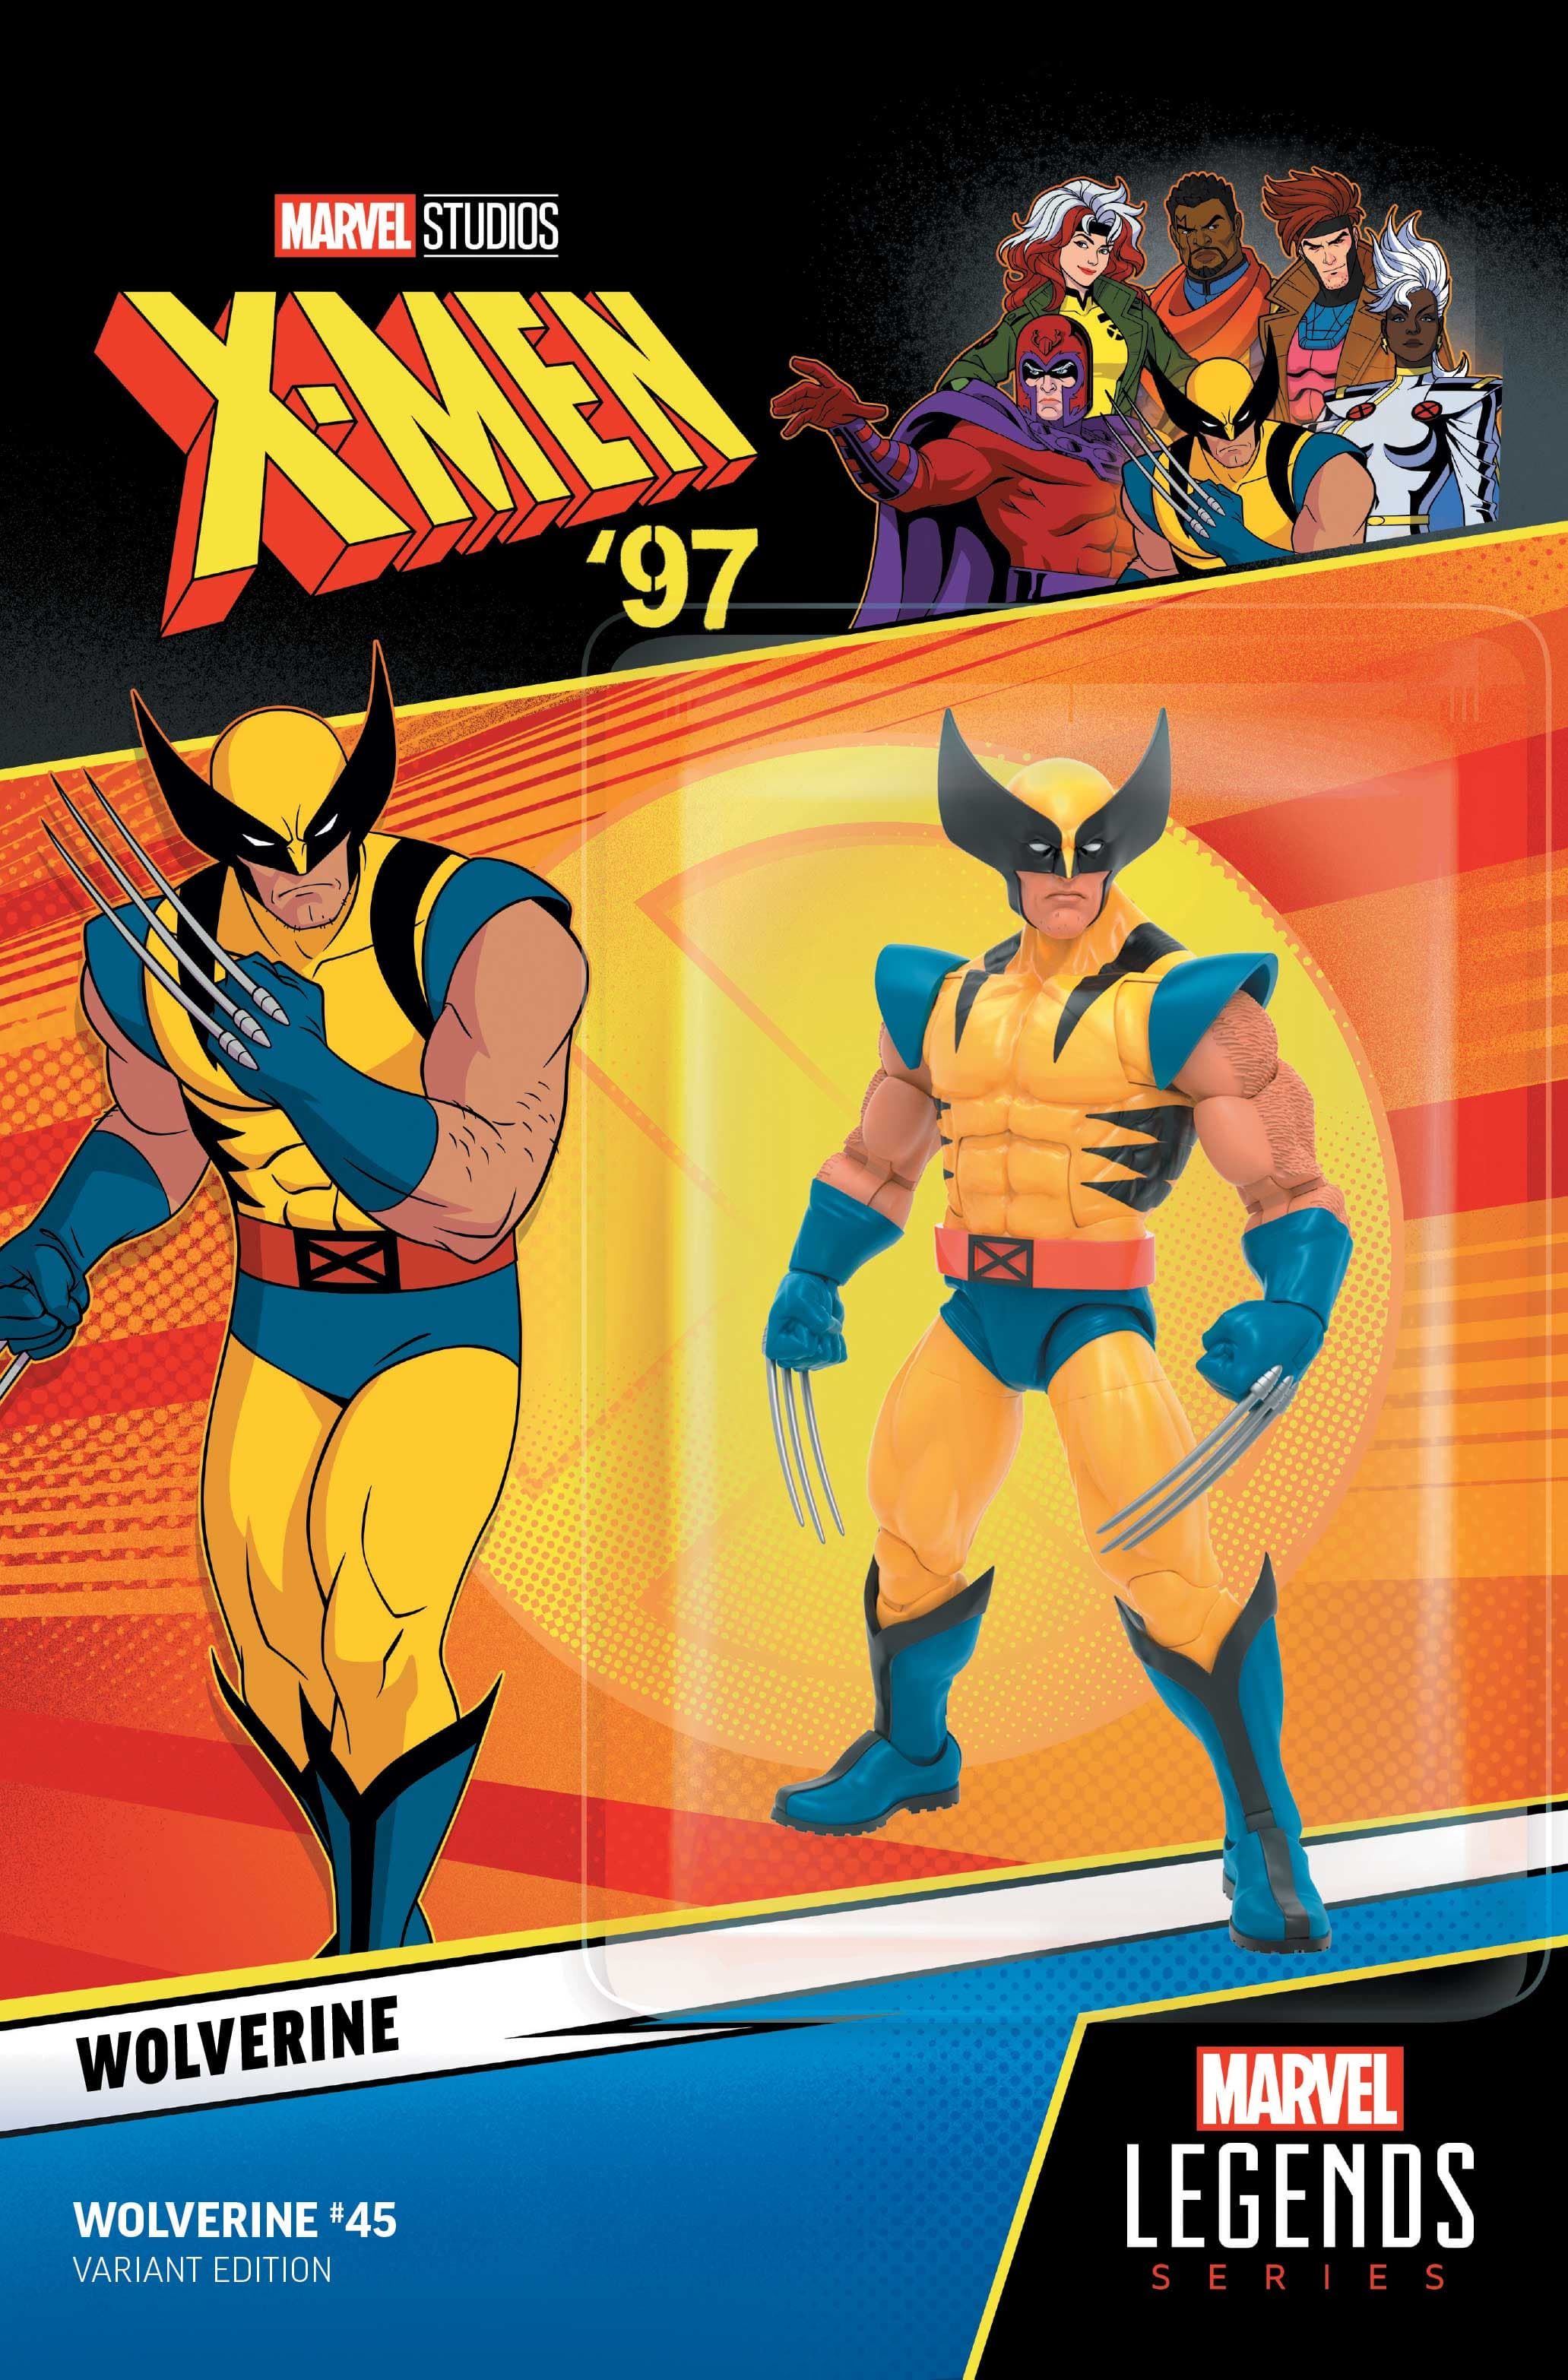 Capa variante de boneco de ação Wolverine #45 X-Men 97